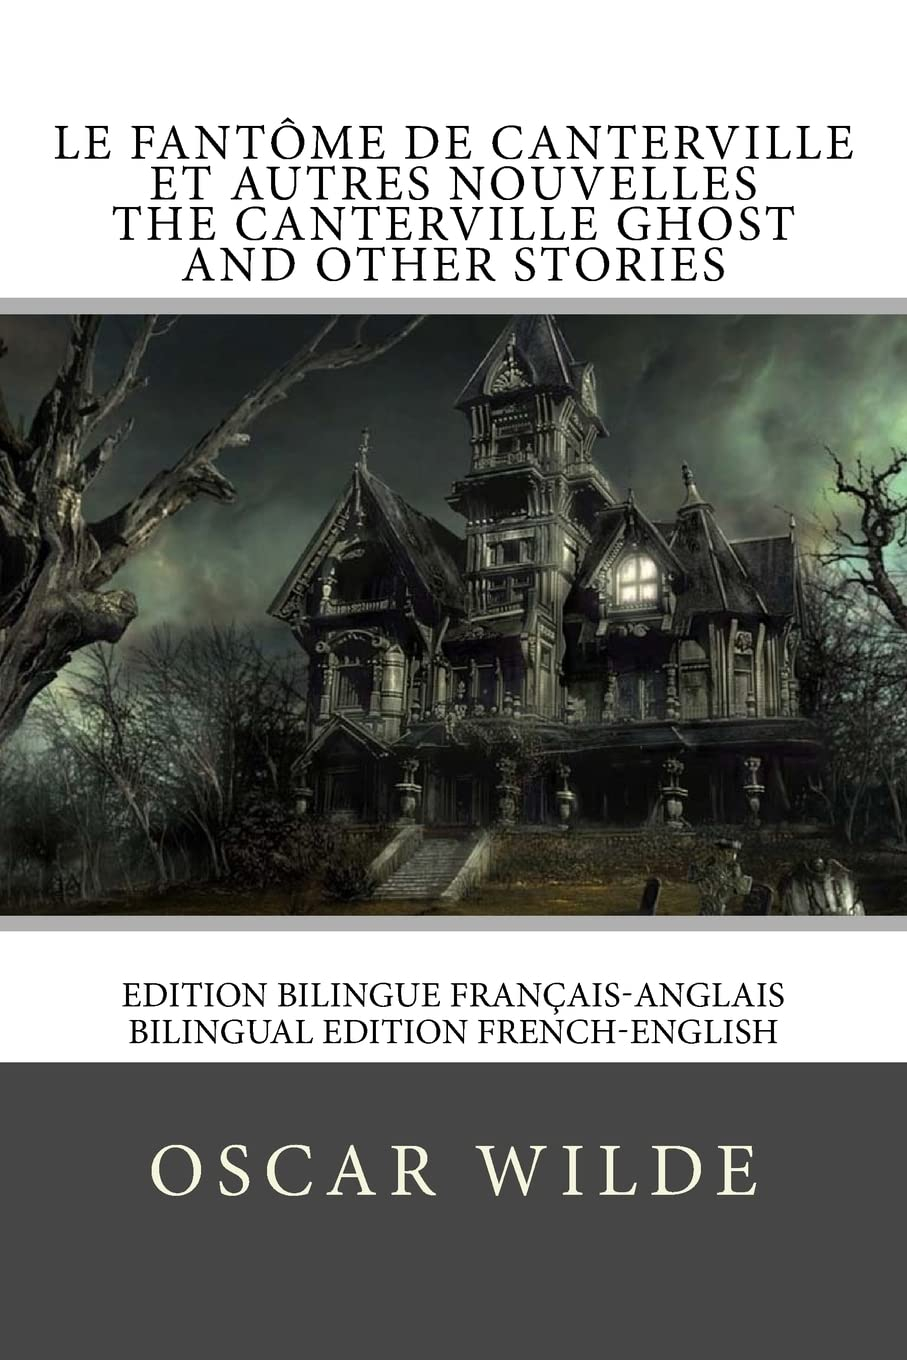 Le fantôme de Canterville / The Canterville ghost: Edition bilingue français-anglais / Bilingual edi